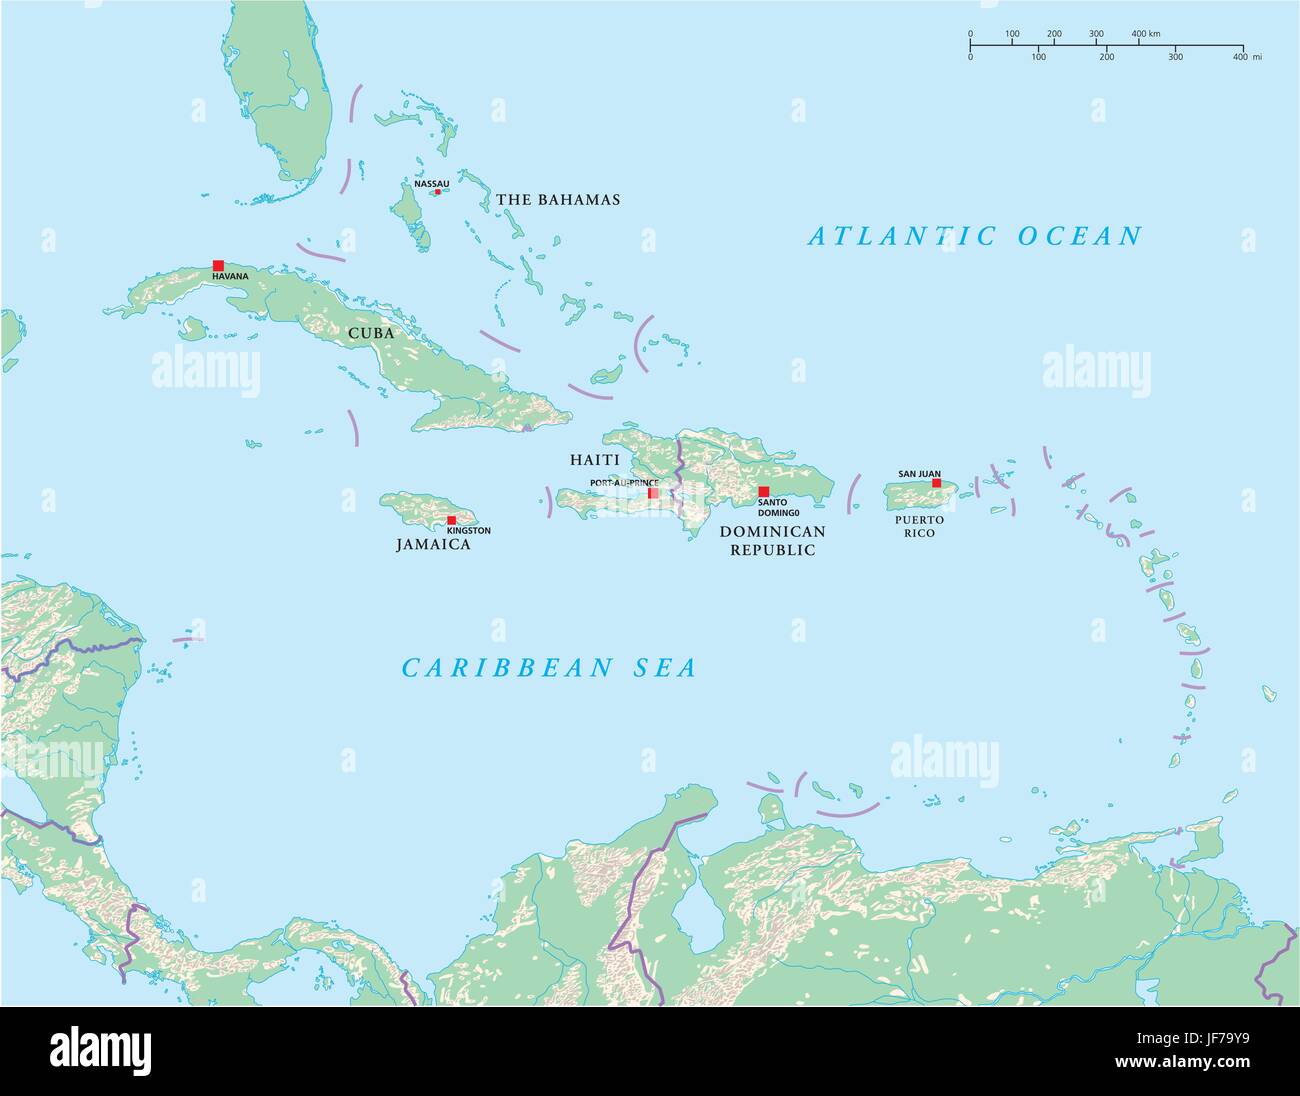 Cuba, Jamaïque, Caraïbes, Haïti, carte, atlas, carte du monde, de l'océan Atlantique, Illustration de Vecteur